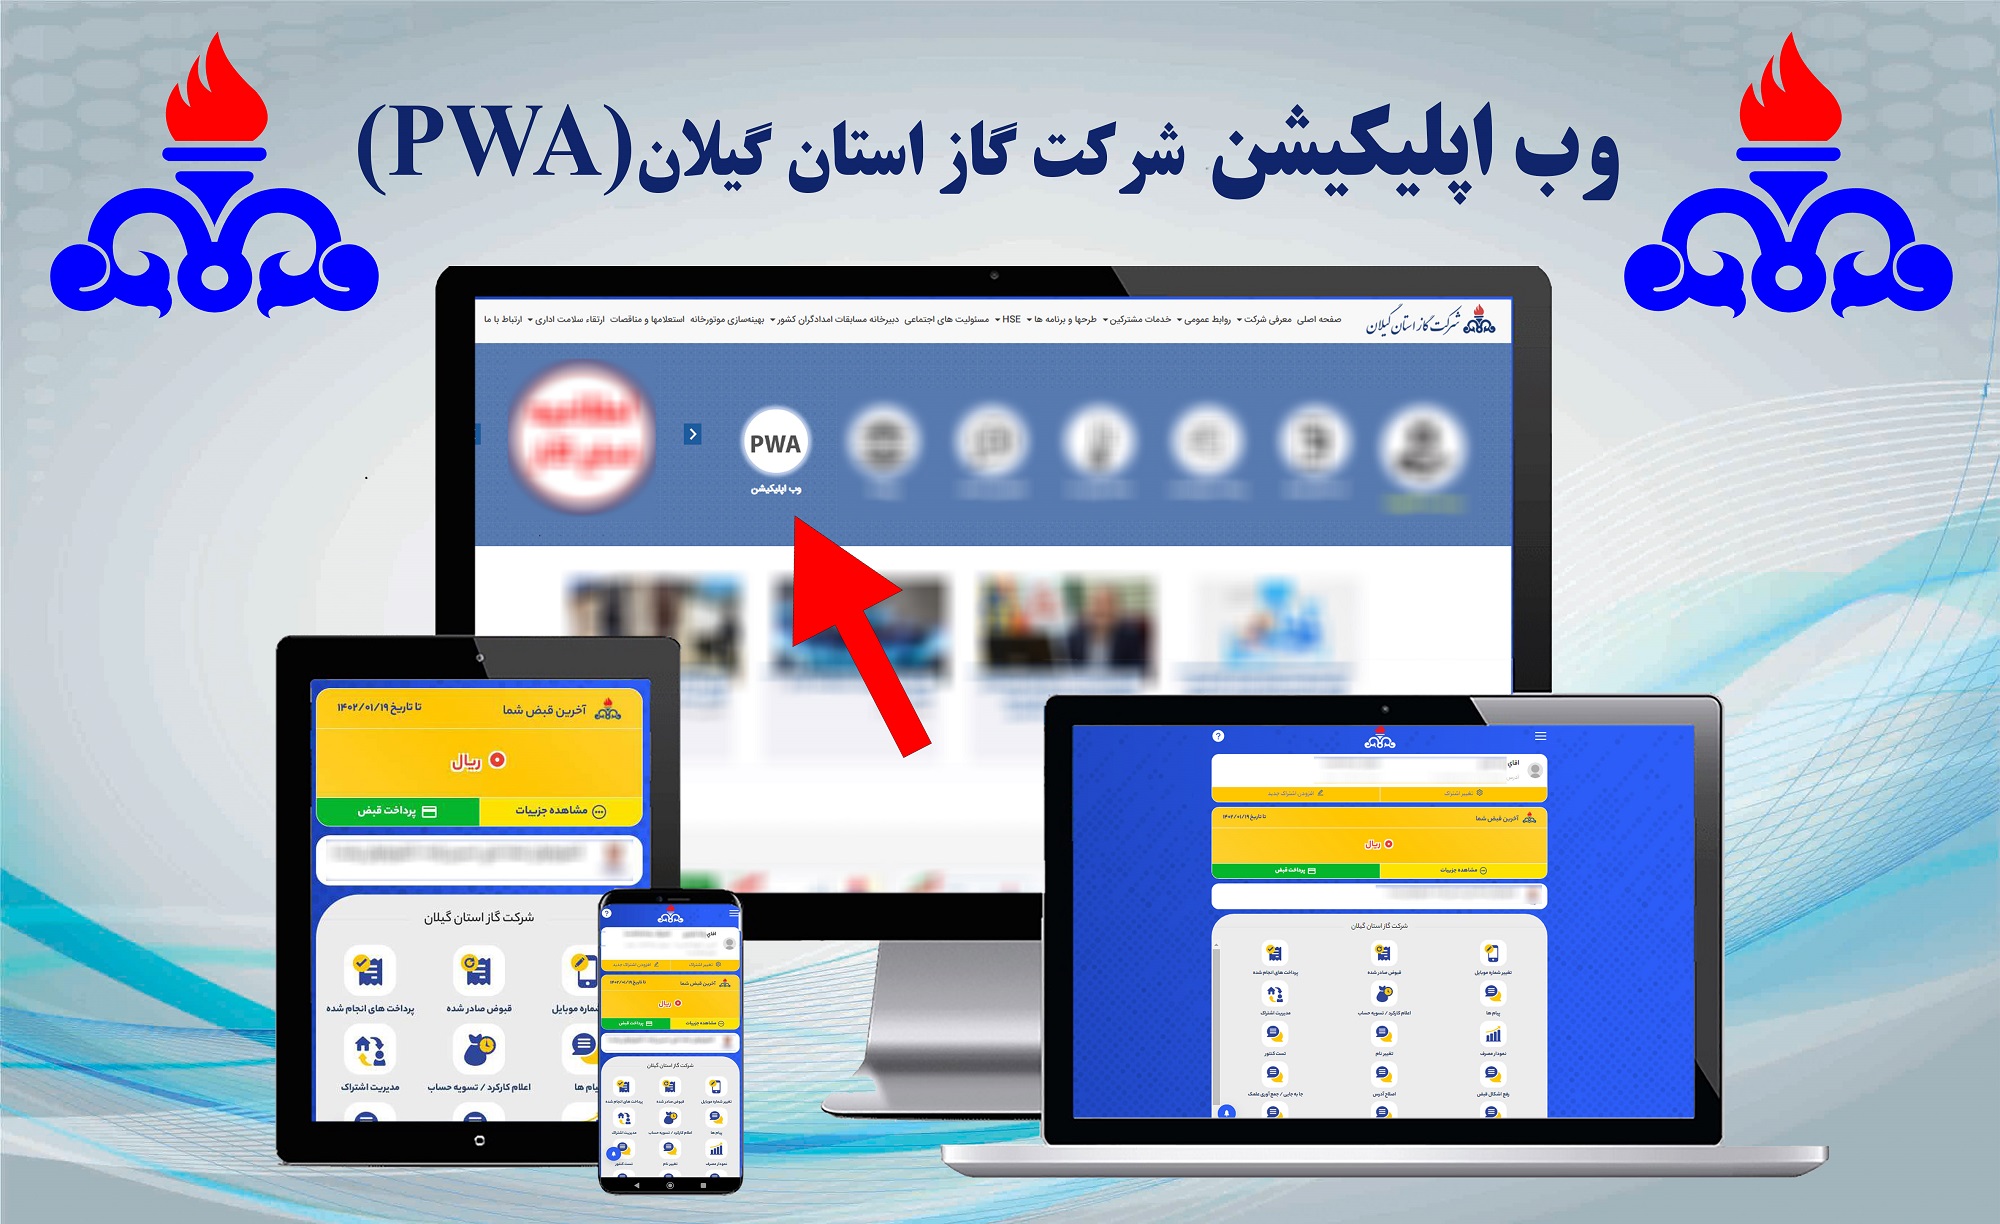 اطلاعیه؛ نسخه وب اپلیکیشن شرکت گاز گیلان راه اندازی شد